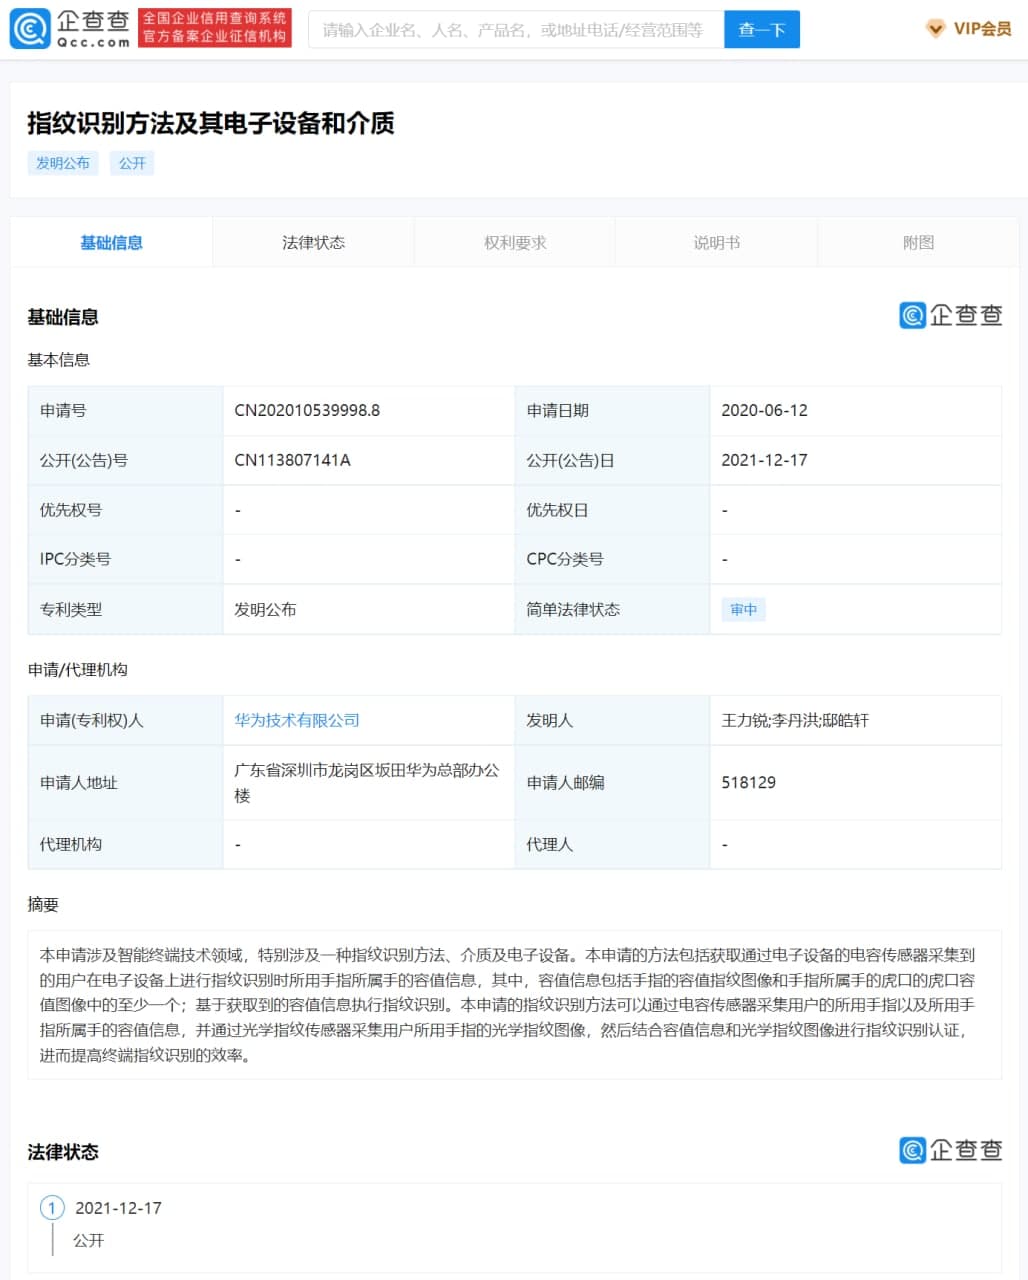 Huawei fingerprint identification